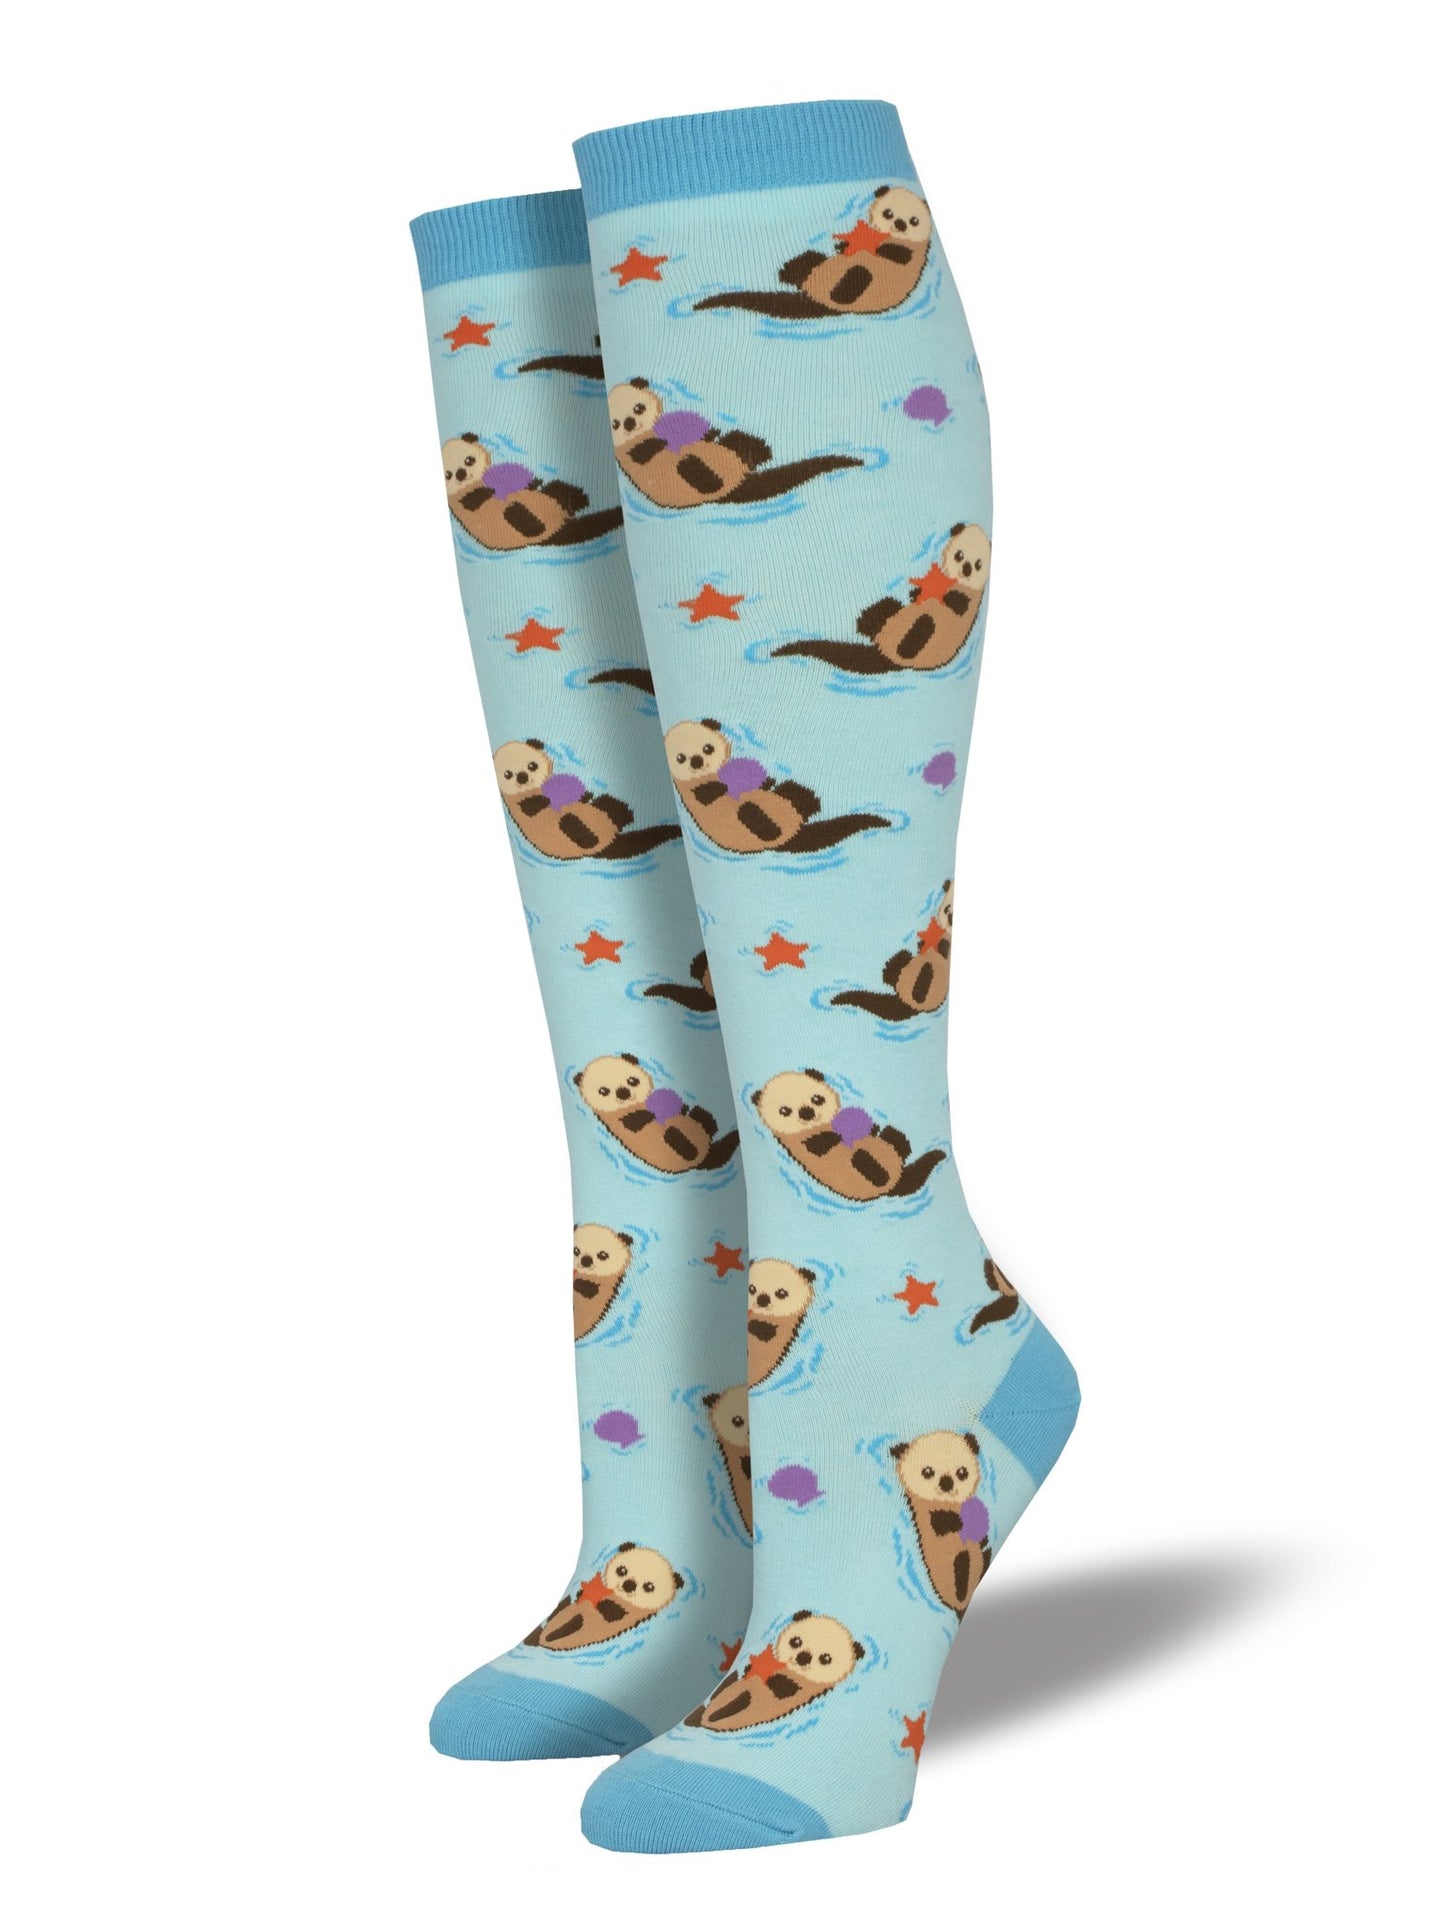 Otter Spotter Women's Knee High Socks Blue